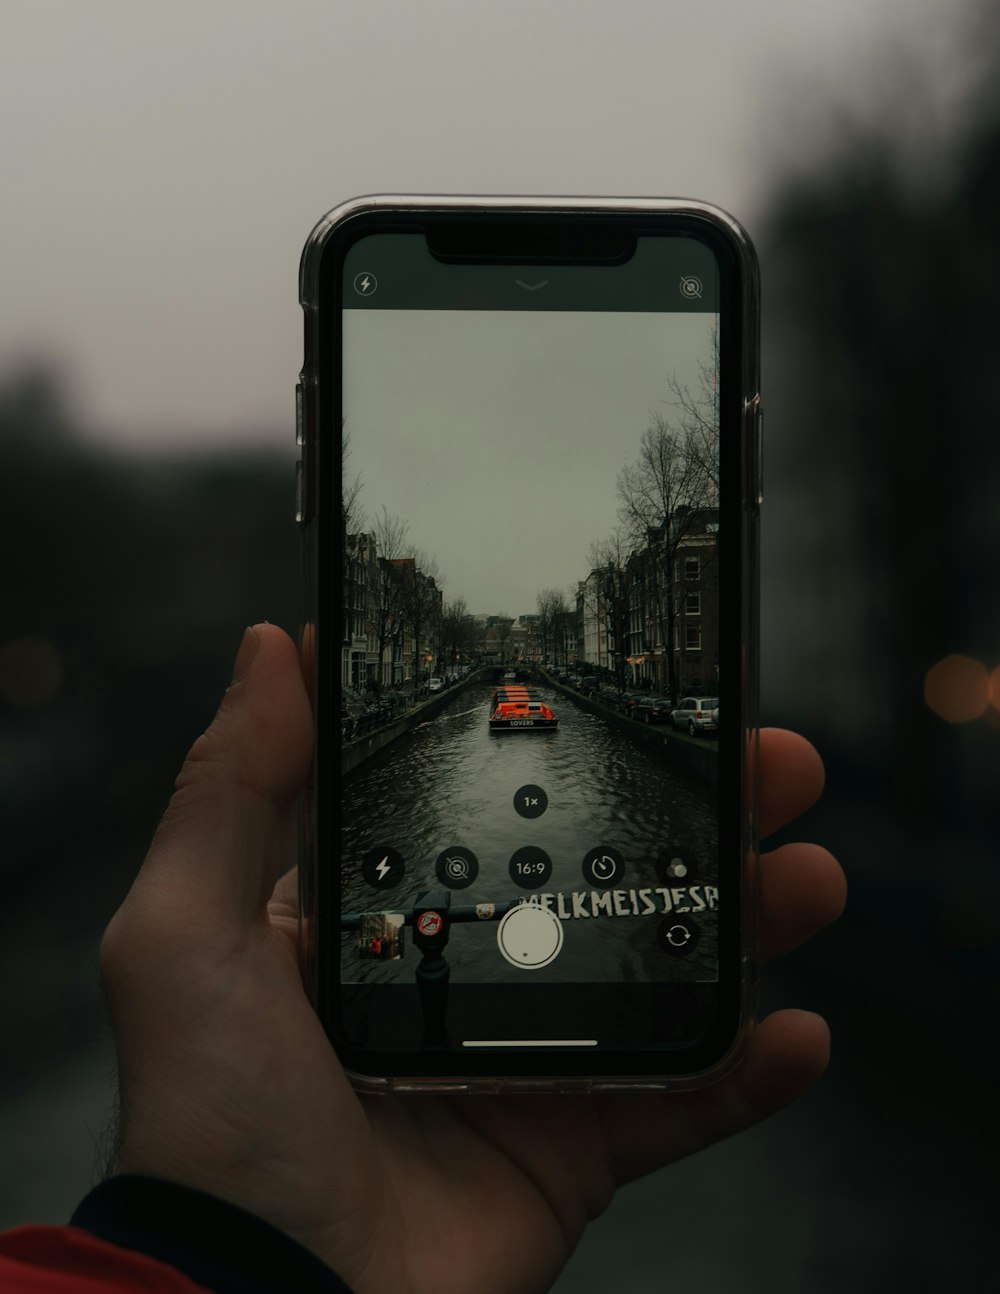 person holding black iphone 5 photo – Free Netherlands Image on Unsplash